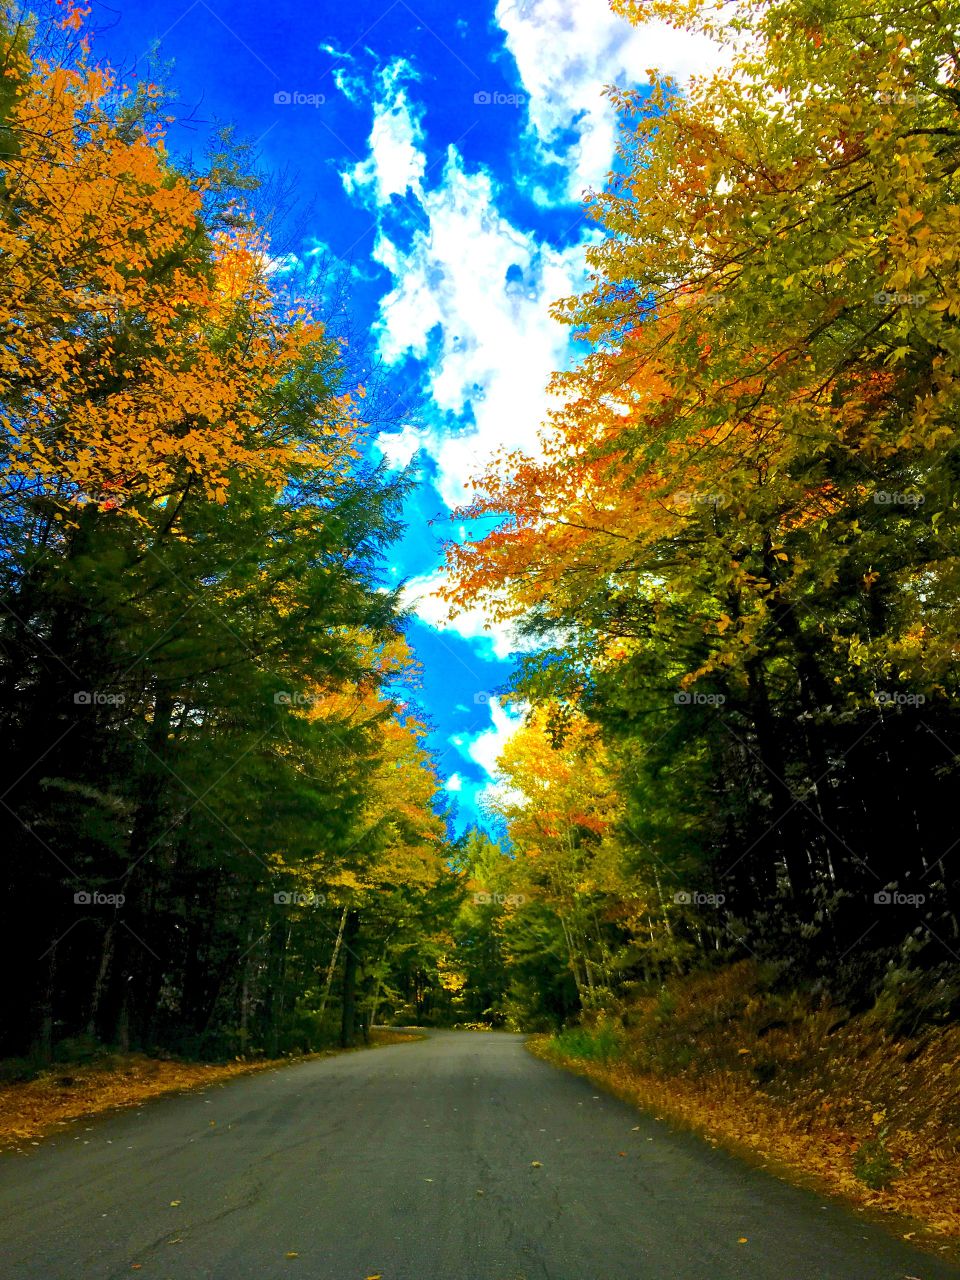 Fall Foliage Road